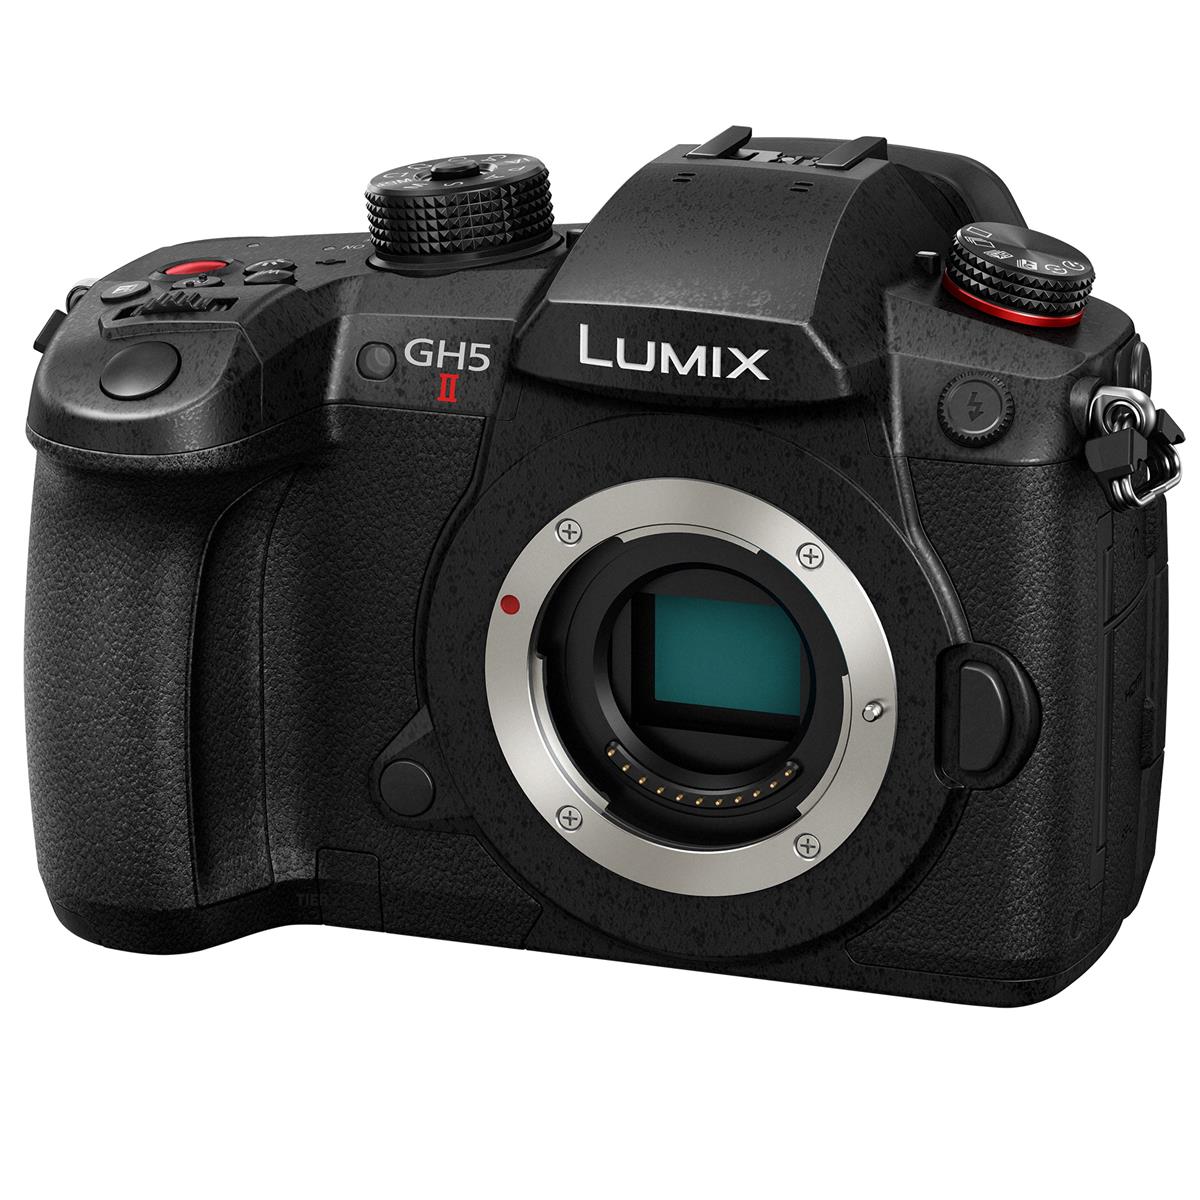 Image of Panasonic Lumix GH5 II Mirrorless Camera